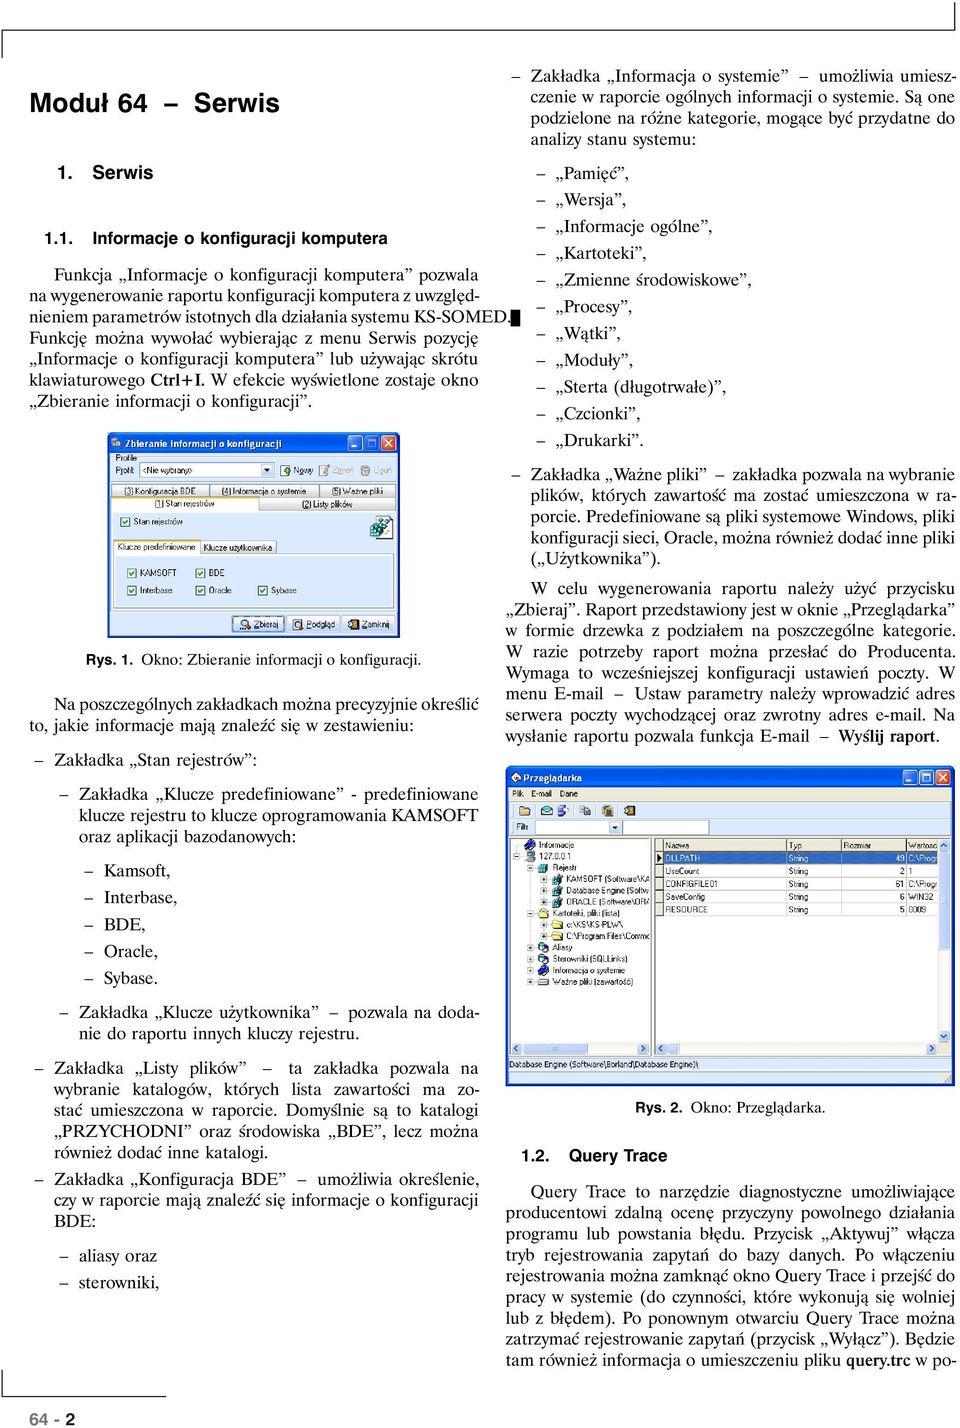 1. Informacje o konfiguracji komputera Funkcja Informacje o konfiguracji komputera pozwala na wygenerowanie raportu konfiguracji komputera z uwzględnieniem parametrów istotnych dla działania systemu